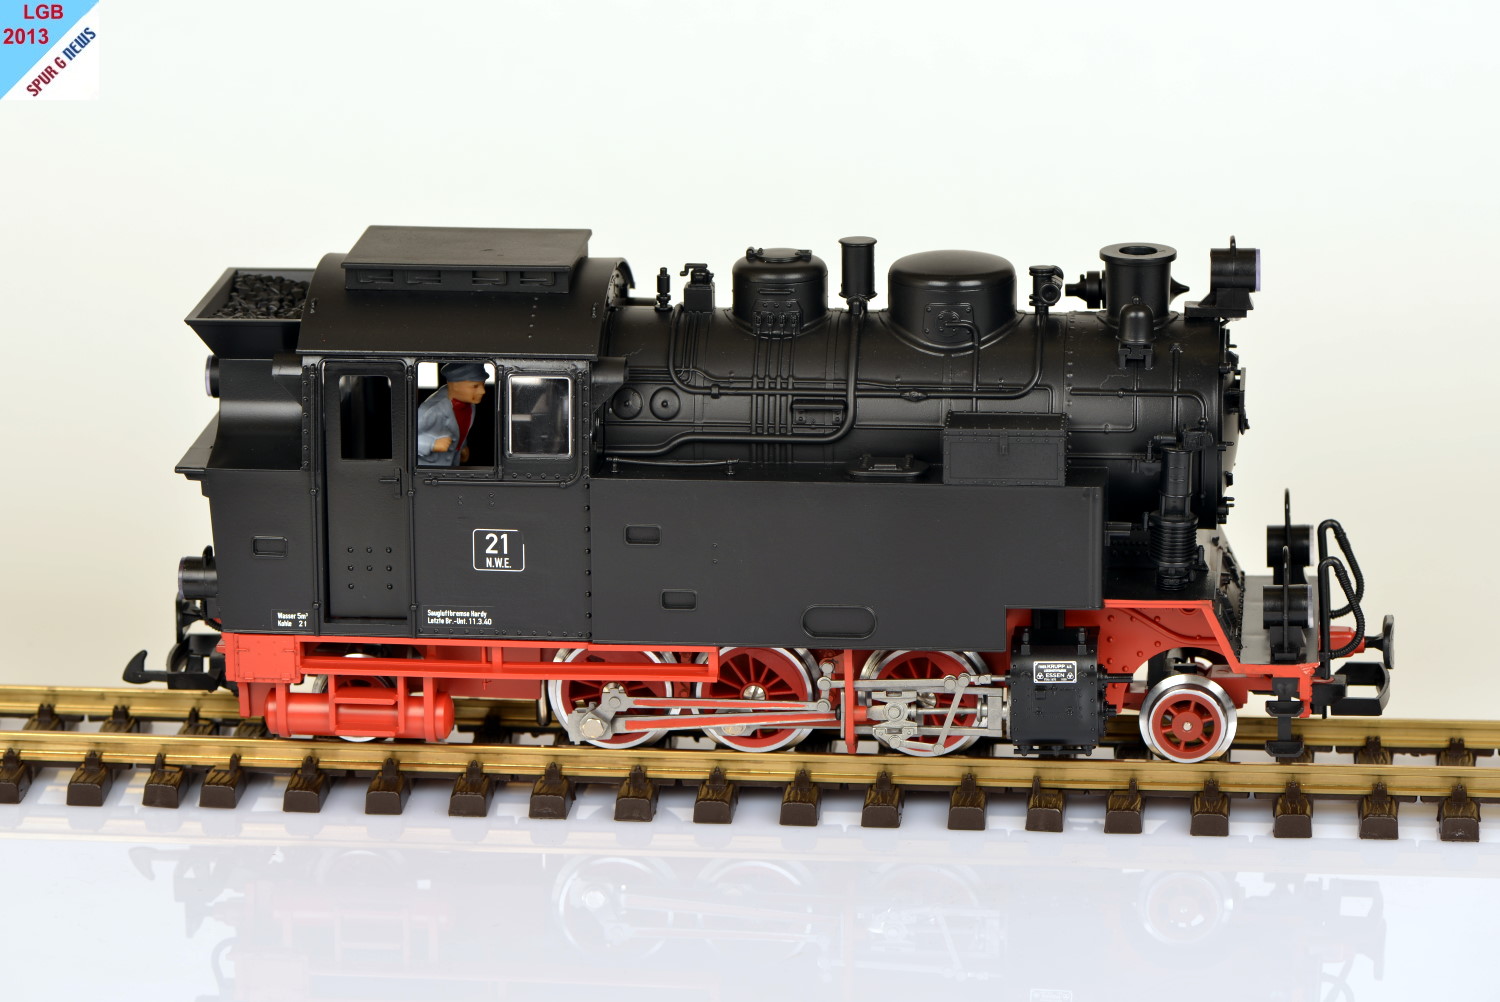 LGB Neuheit 2013 Nr. 27802 L - Dampflokomotive NWE 21 Epoche II